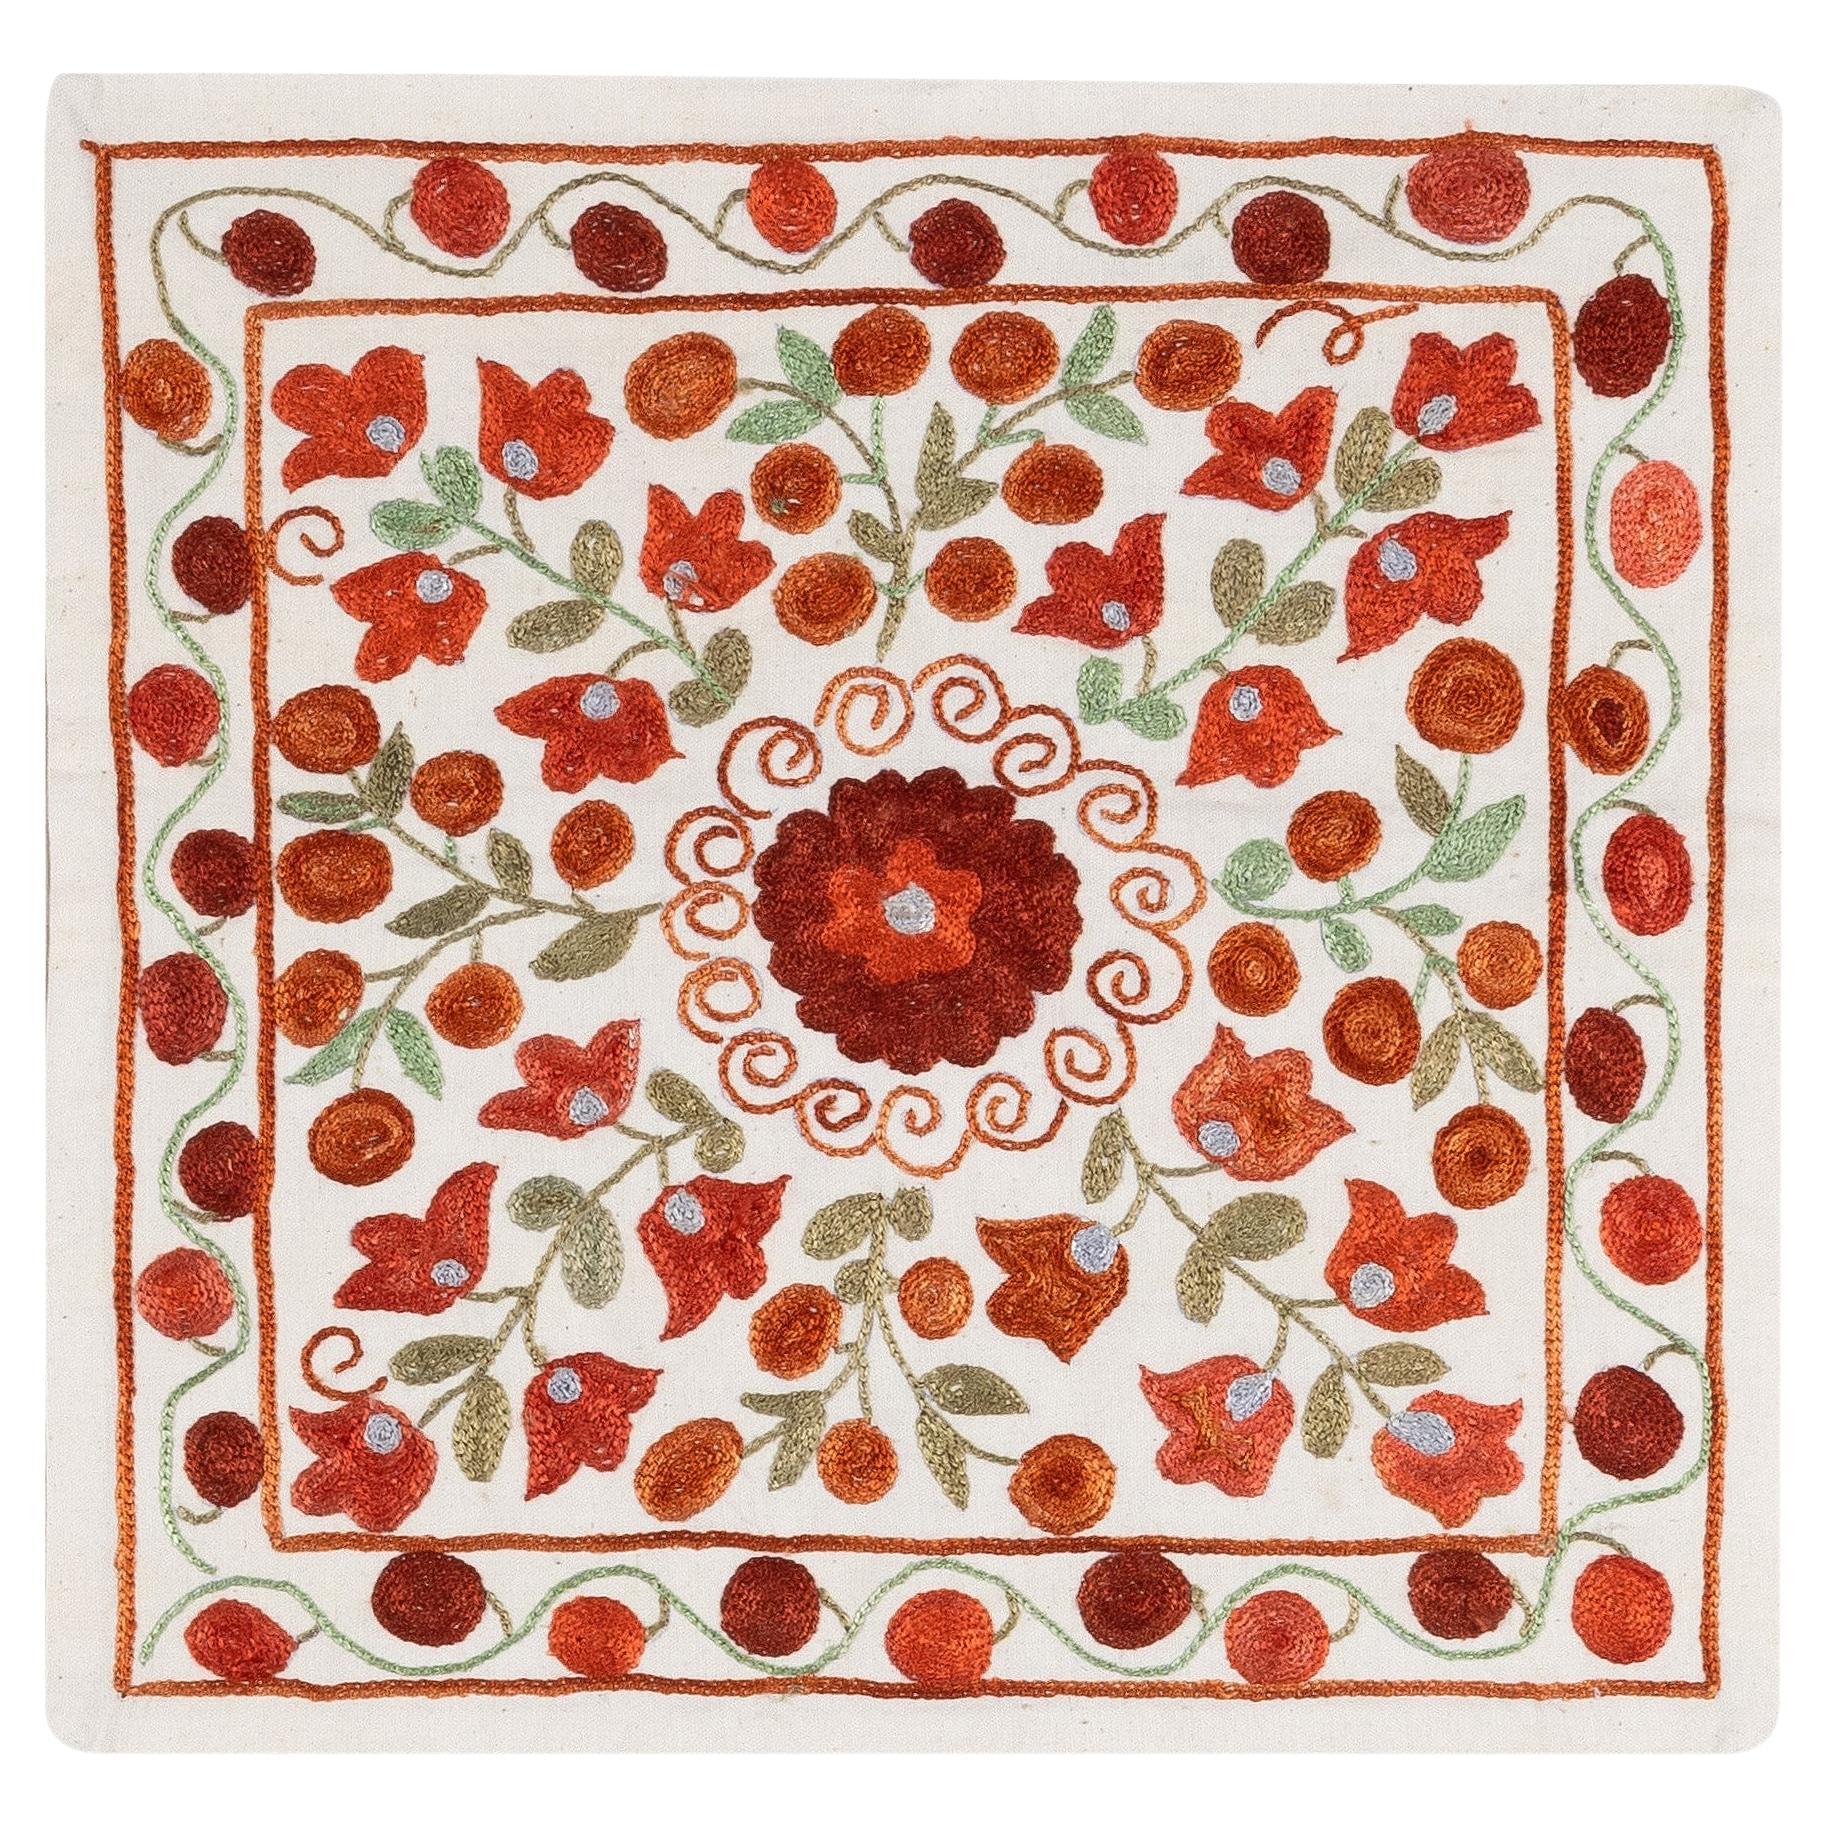 16 "x17" Handmade New Central Asian / Uzbek Silk Embroidered Suzani Cushion Cover (housse de coussin Suzani brodée de soie d'Asie centrale)